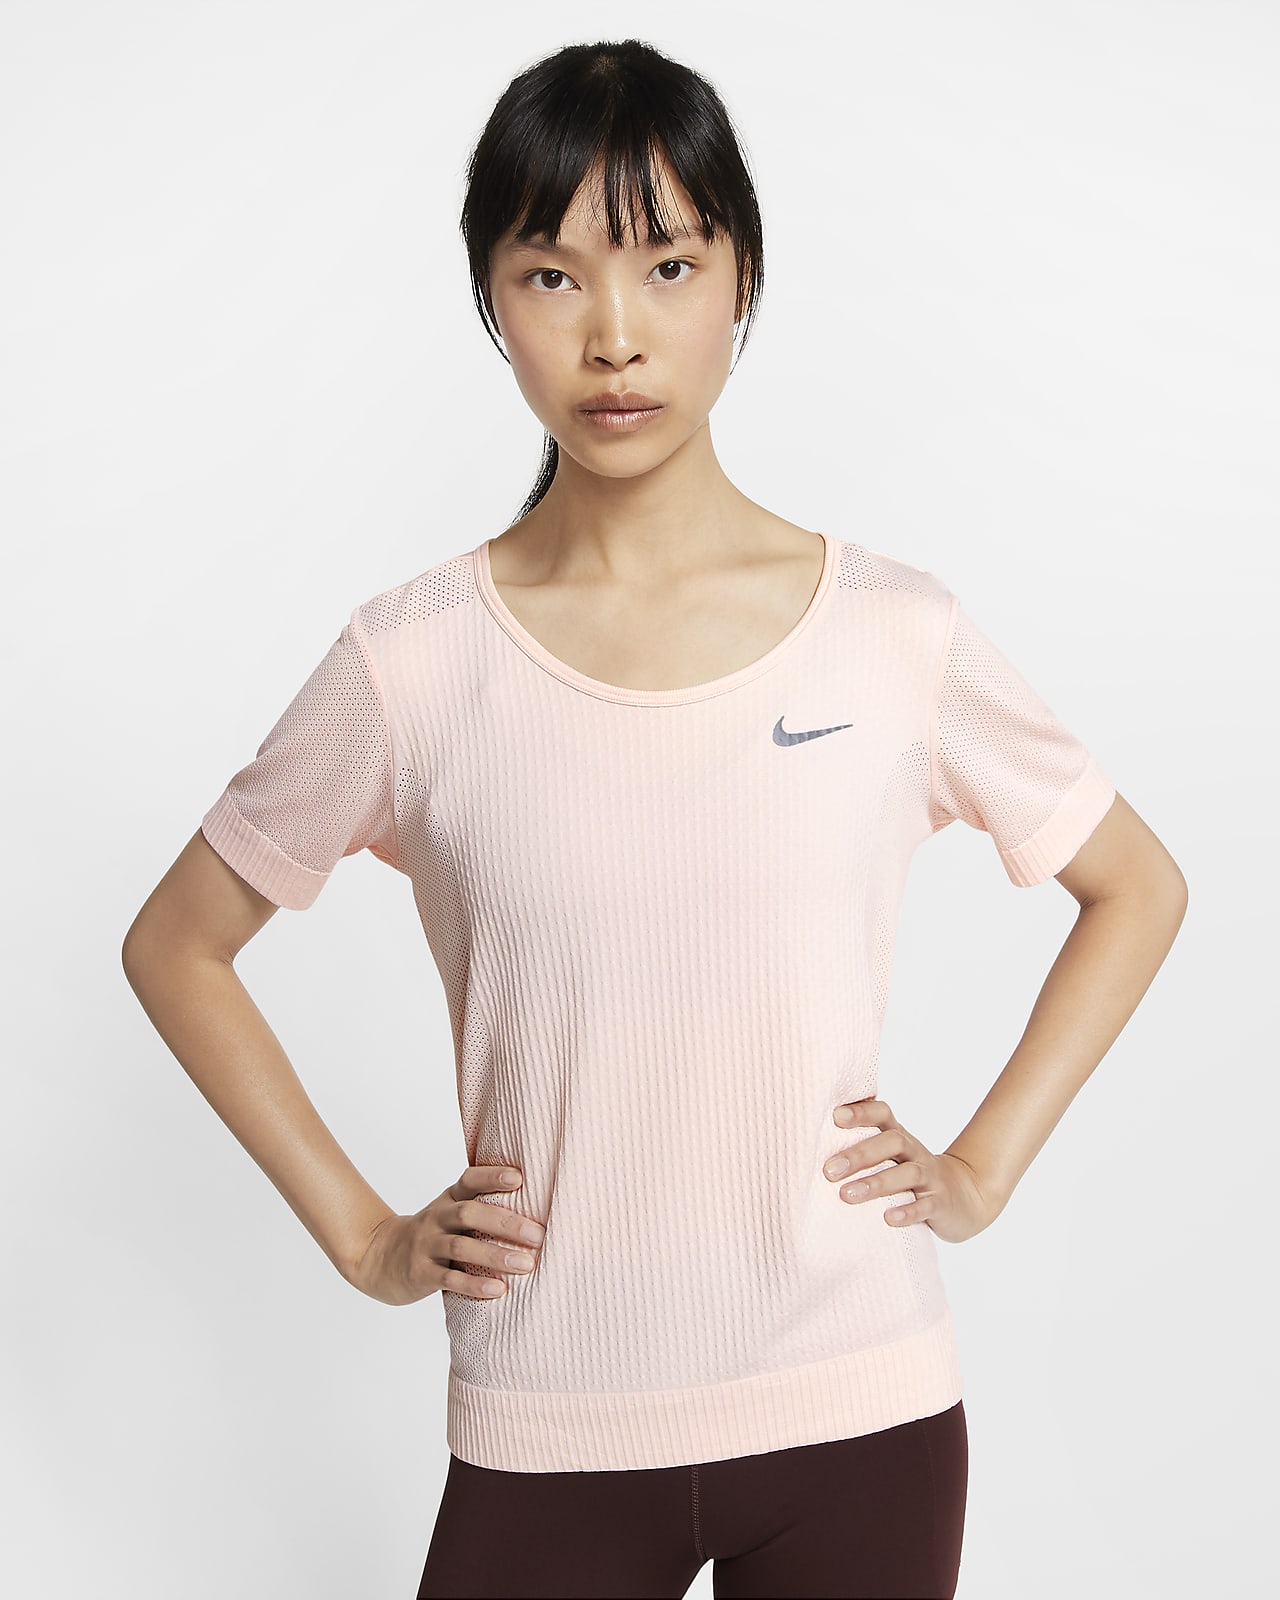 Short-Sleeve Running Top. Nike ID